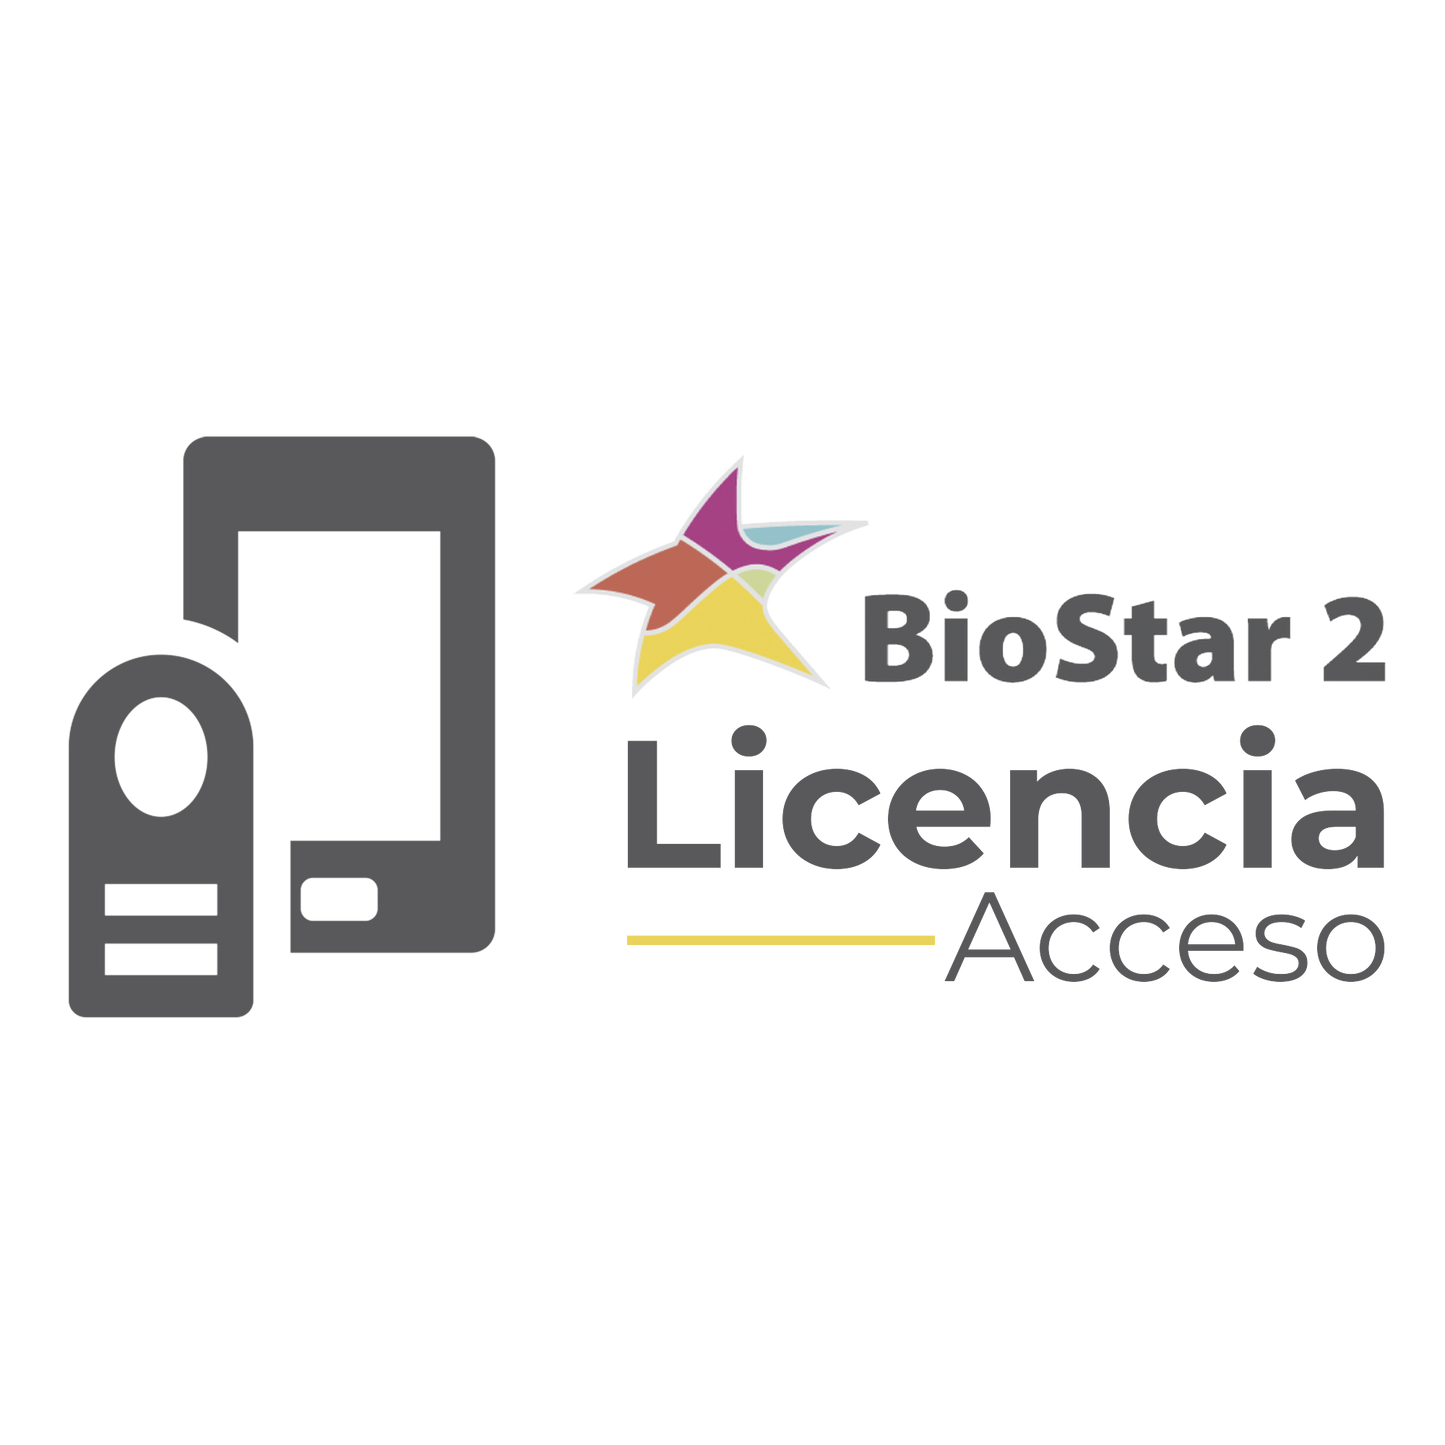 ACTUALIZACION de licencia de acceso BIOSTAR2 BASIC- ADVANCED